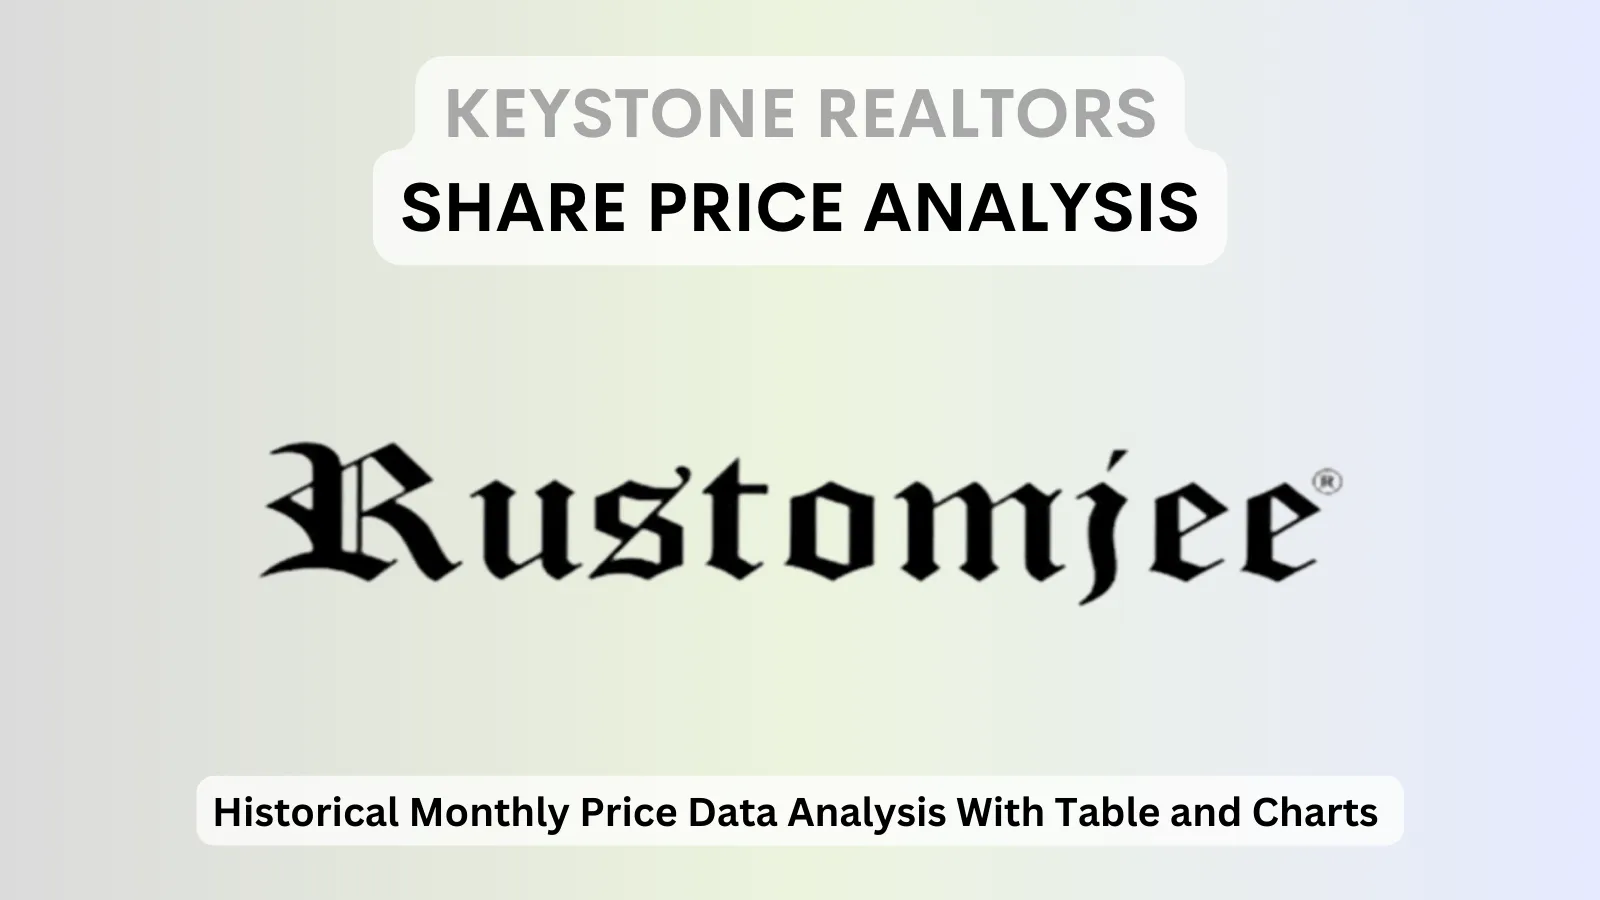 Keystone Realtors share price analysis